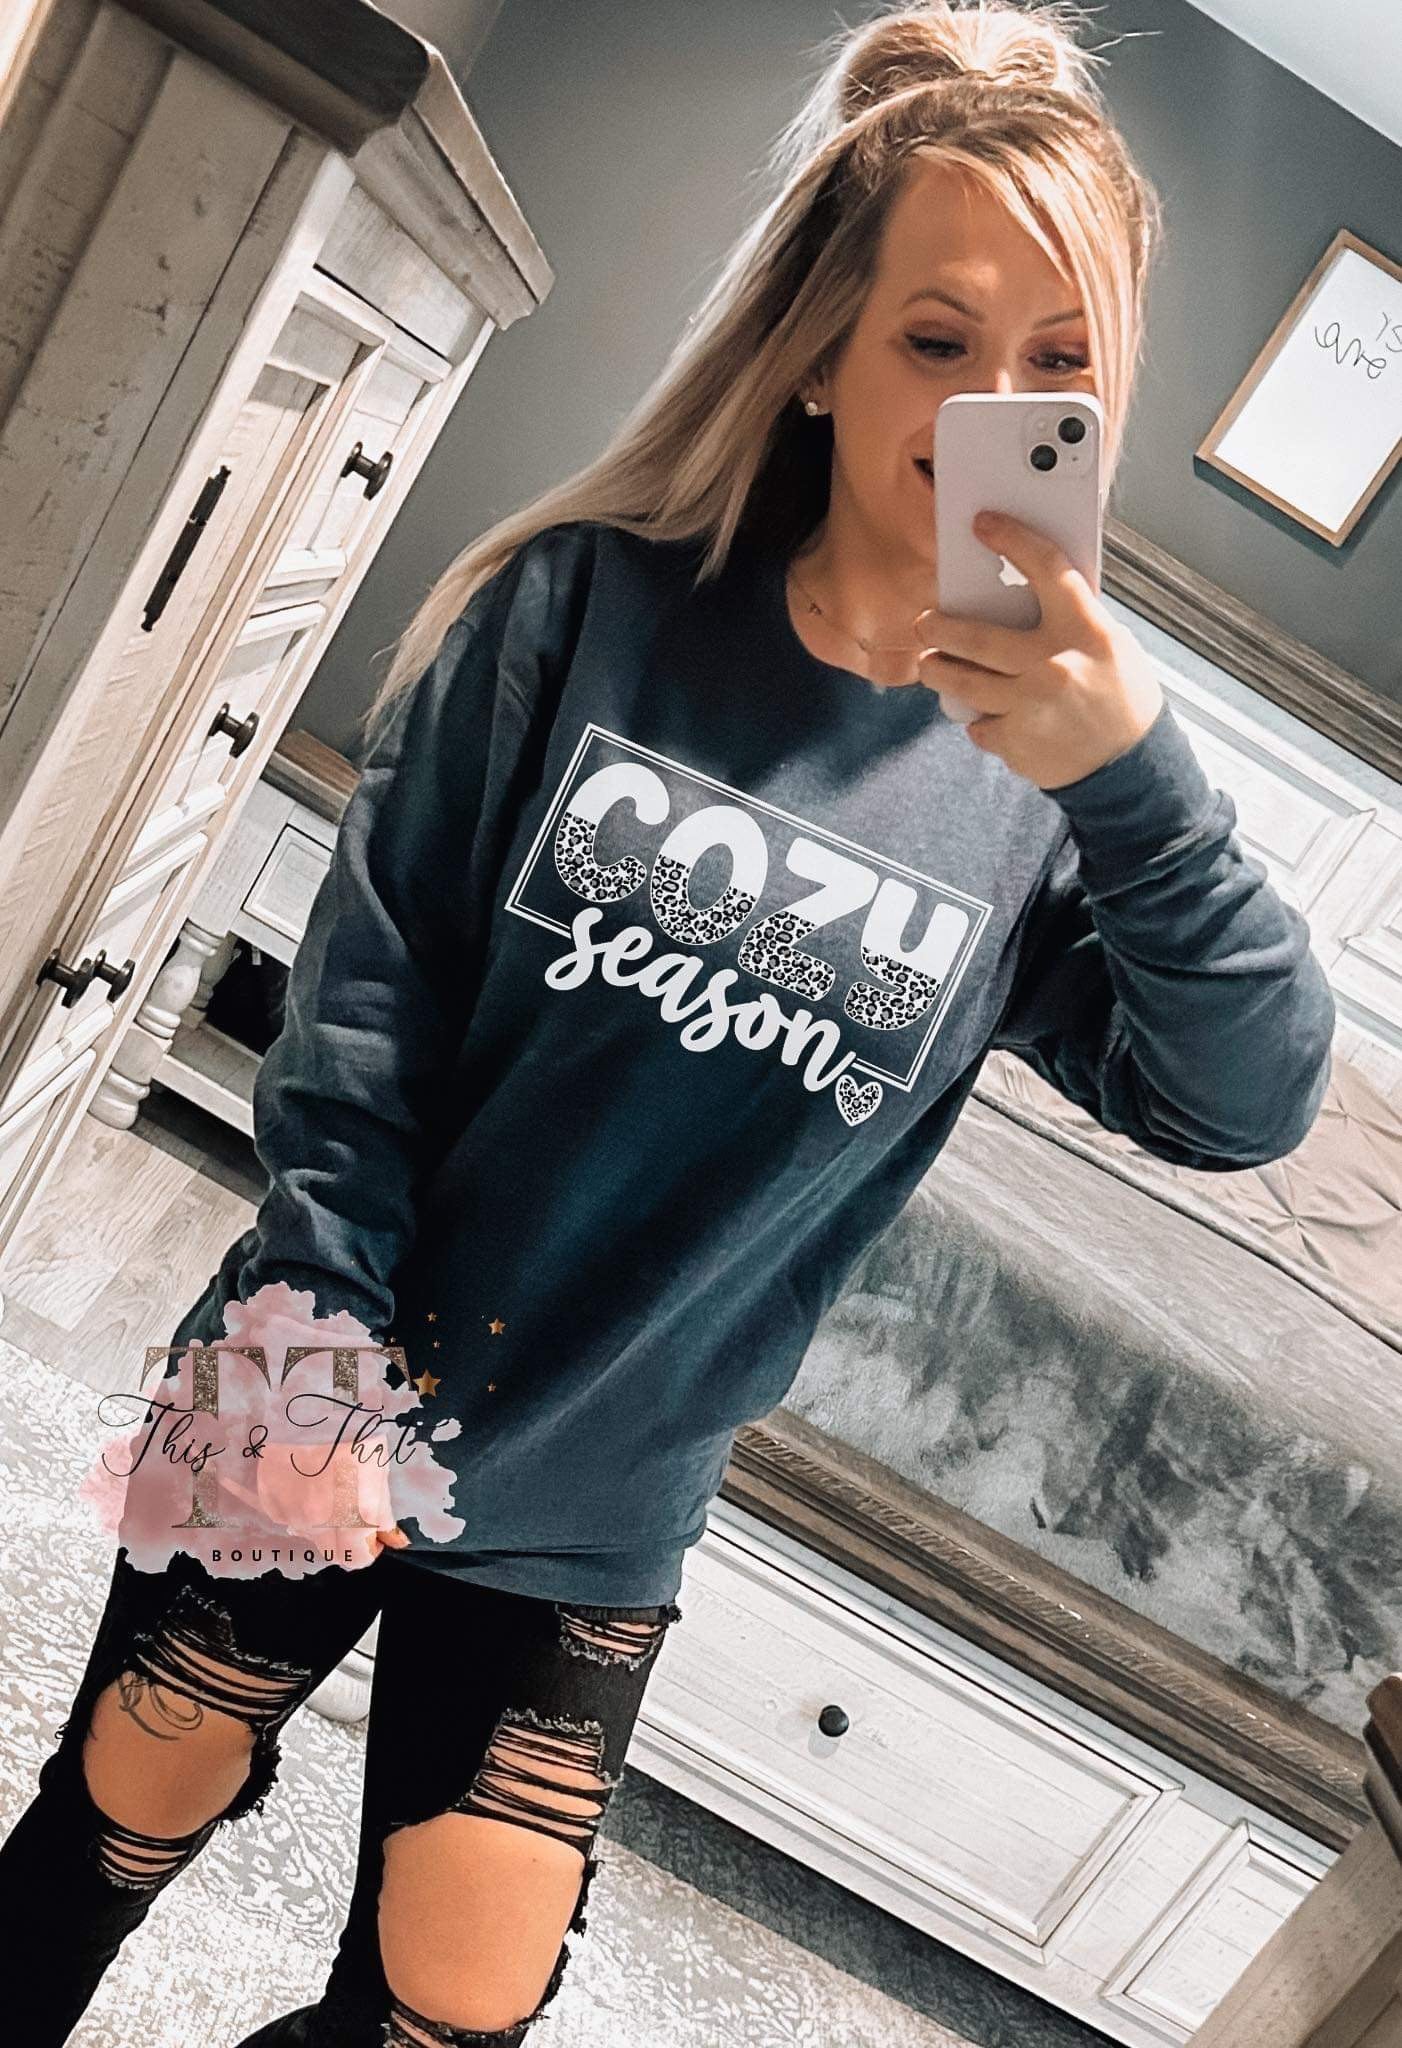 Cozy Season Sweatshirt